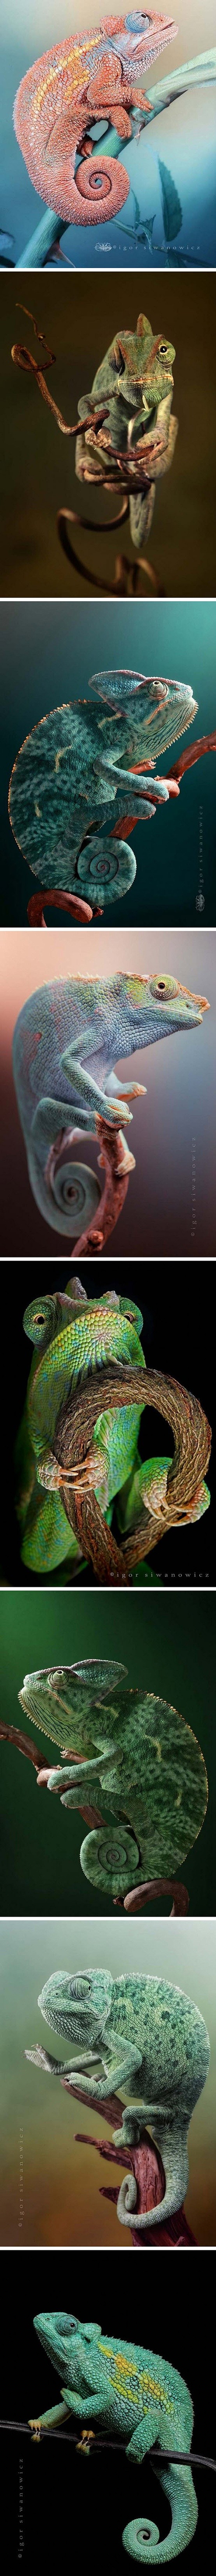 Astounding Chameleon...